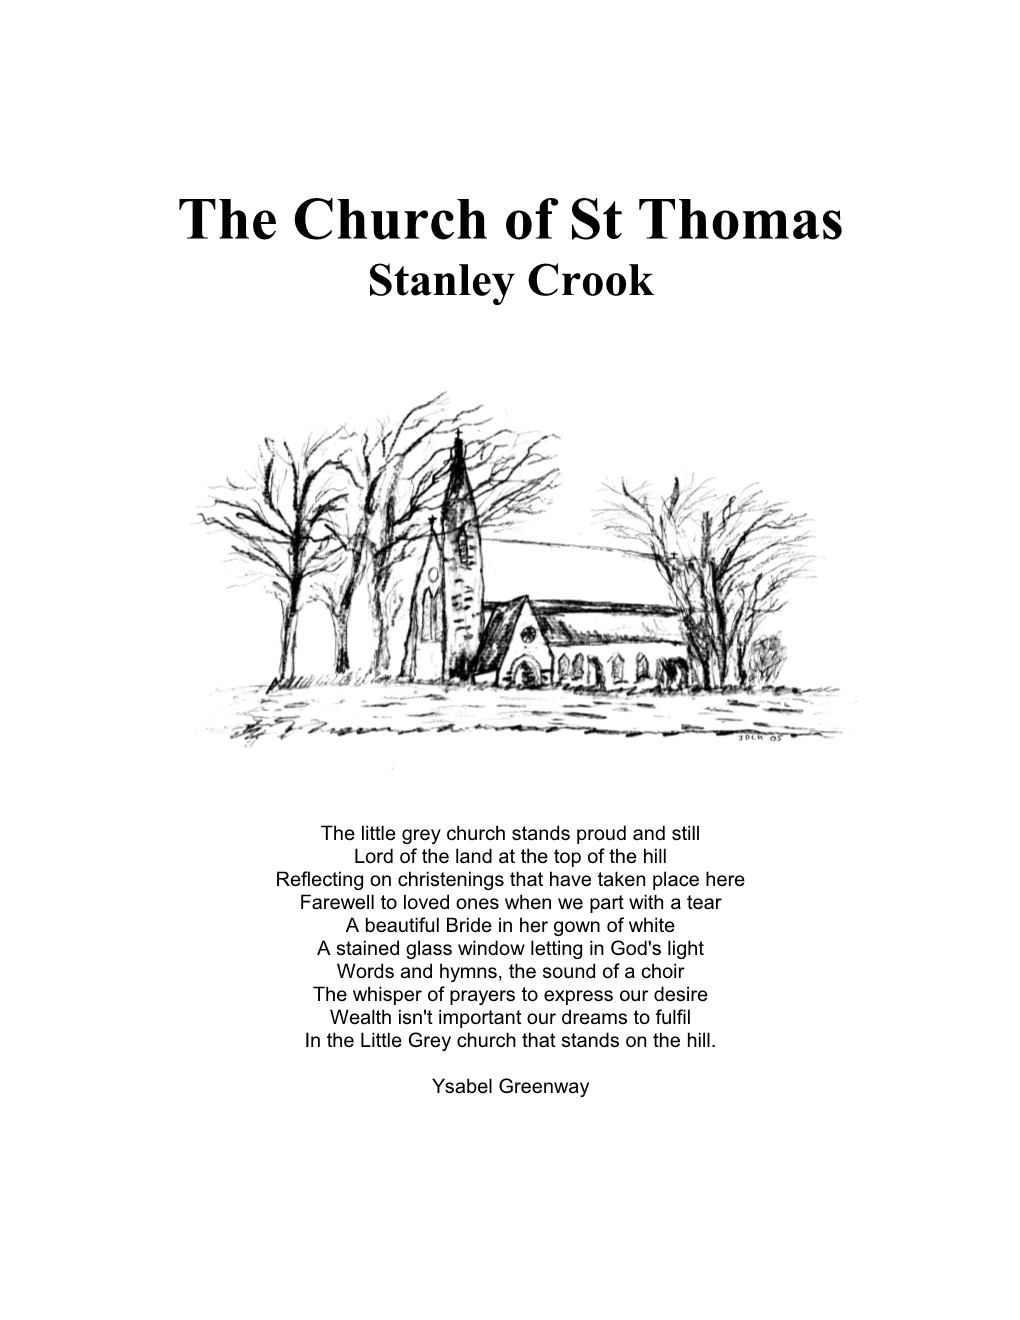 Stanley Crook Parish Profile